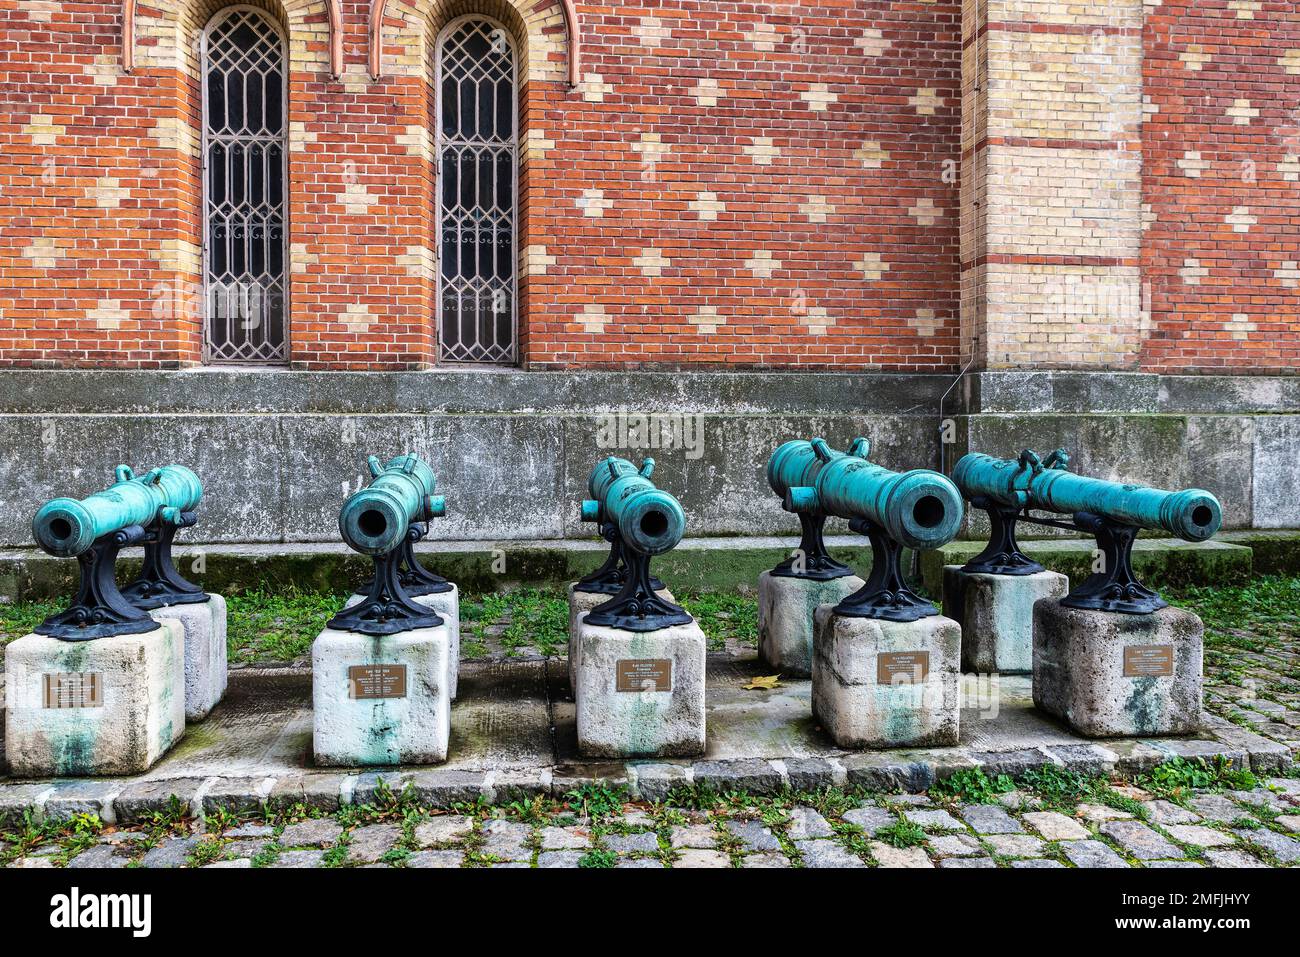 Vienne, Autriche - 16 octobre 2022 : canons du 18th siècle au Musée d'Histoire militaire de Vienne, Autriche Banque D'Images